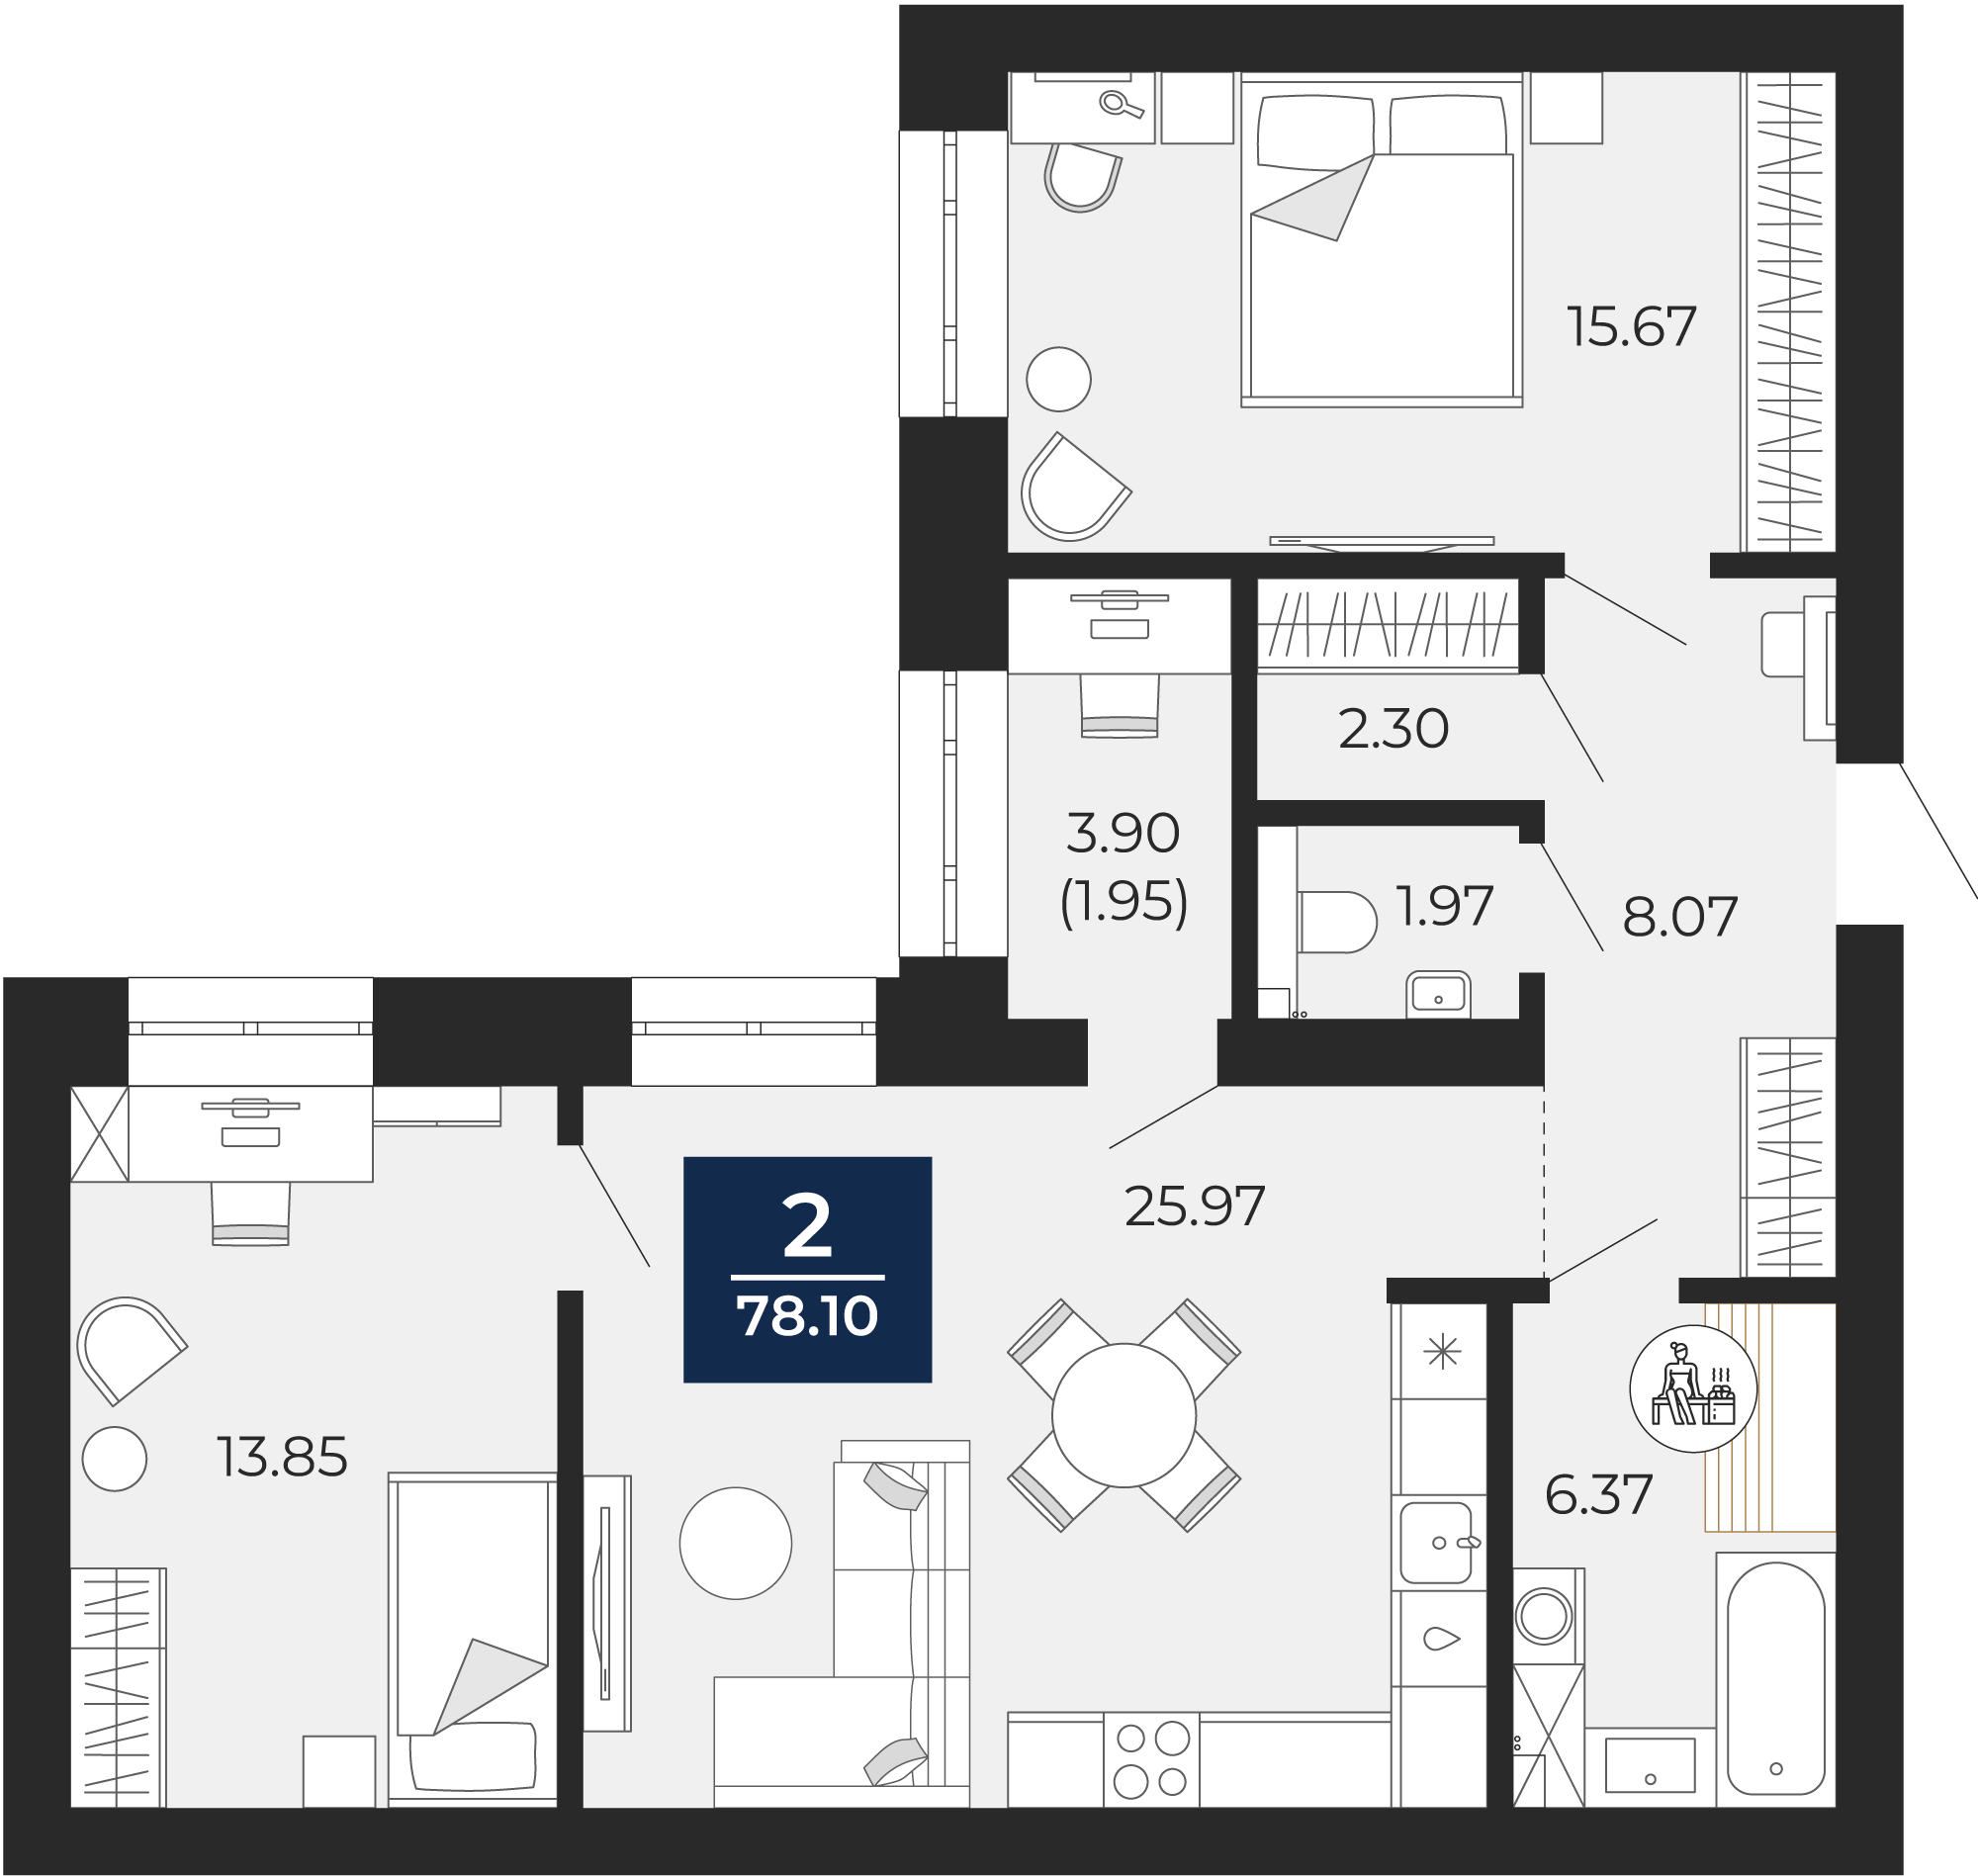 Квартира № 168, 2-комнатная, 78.1 кв. м, 8 этаж